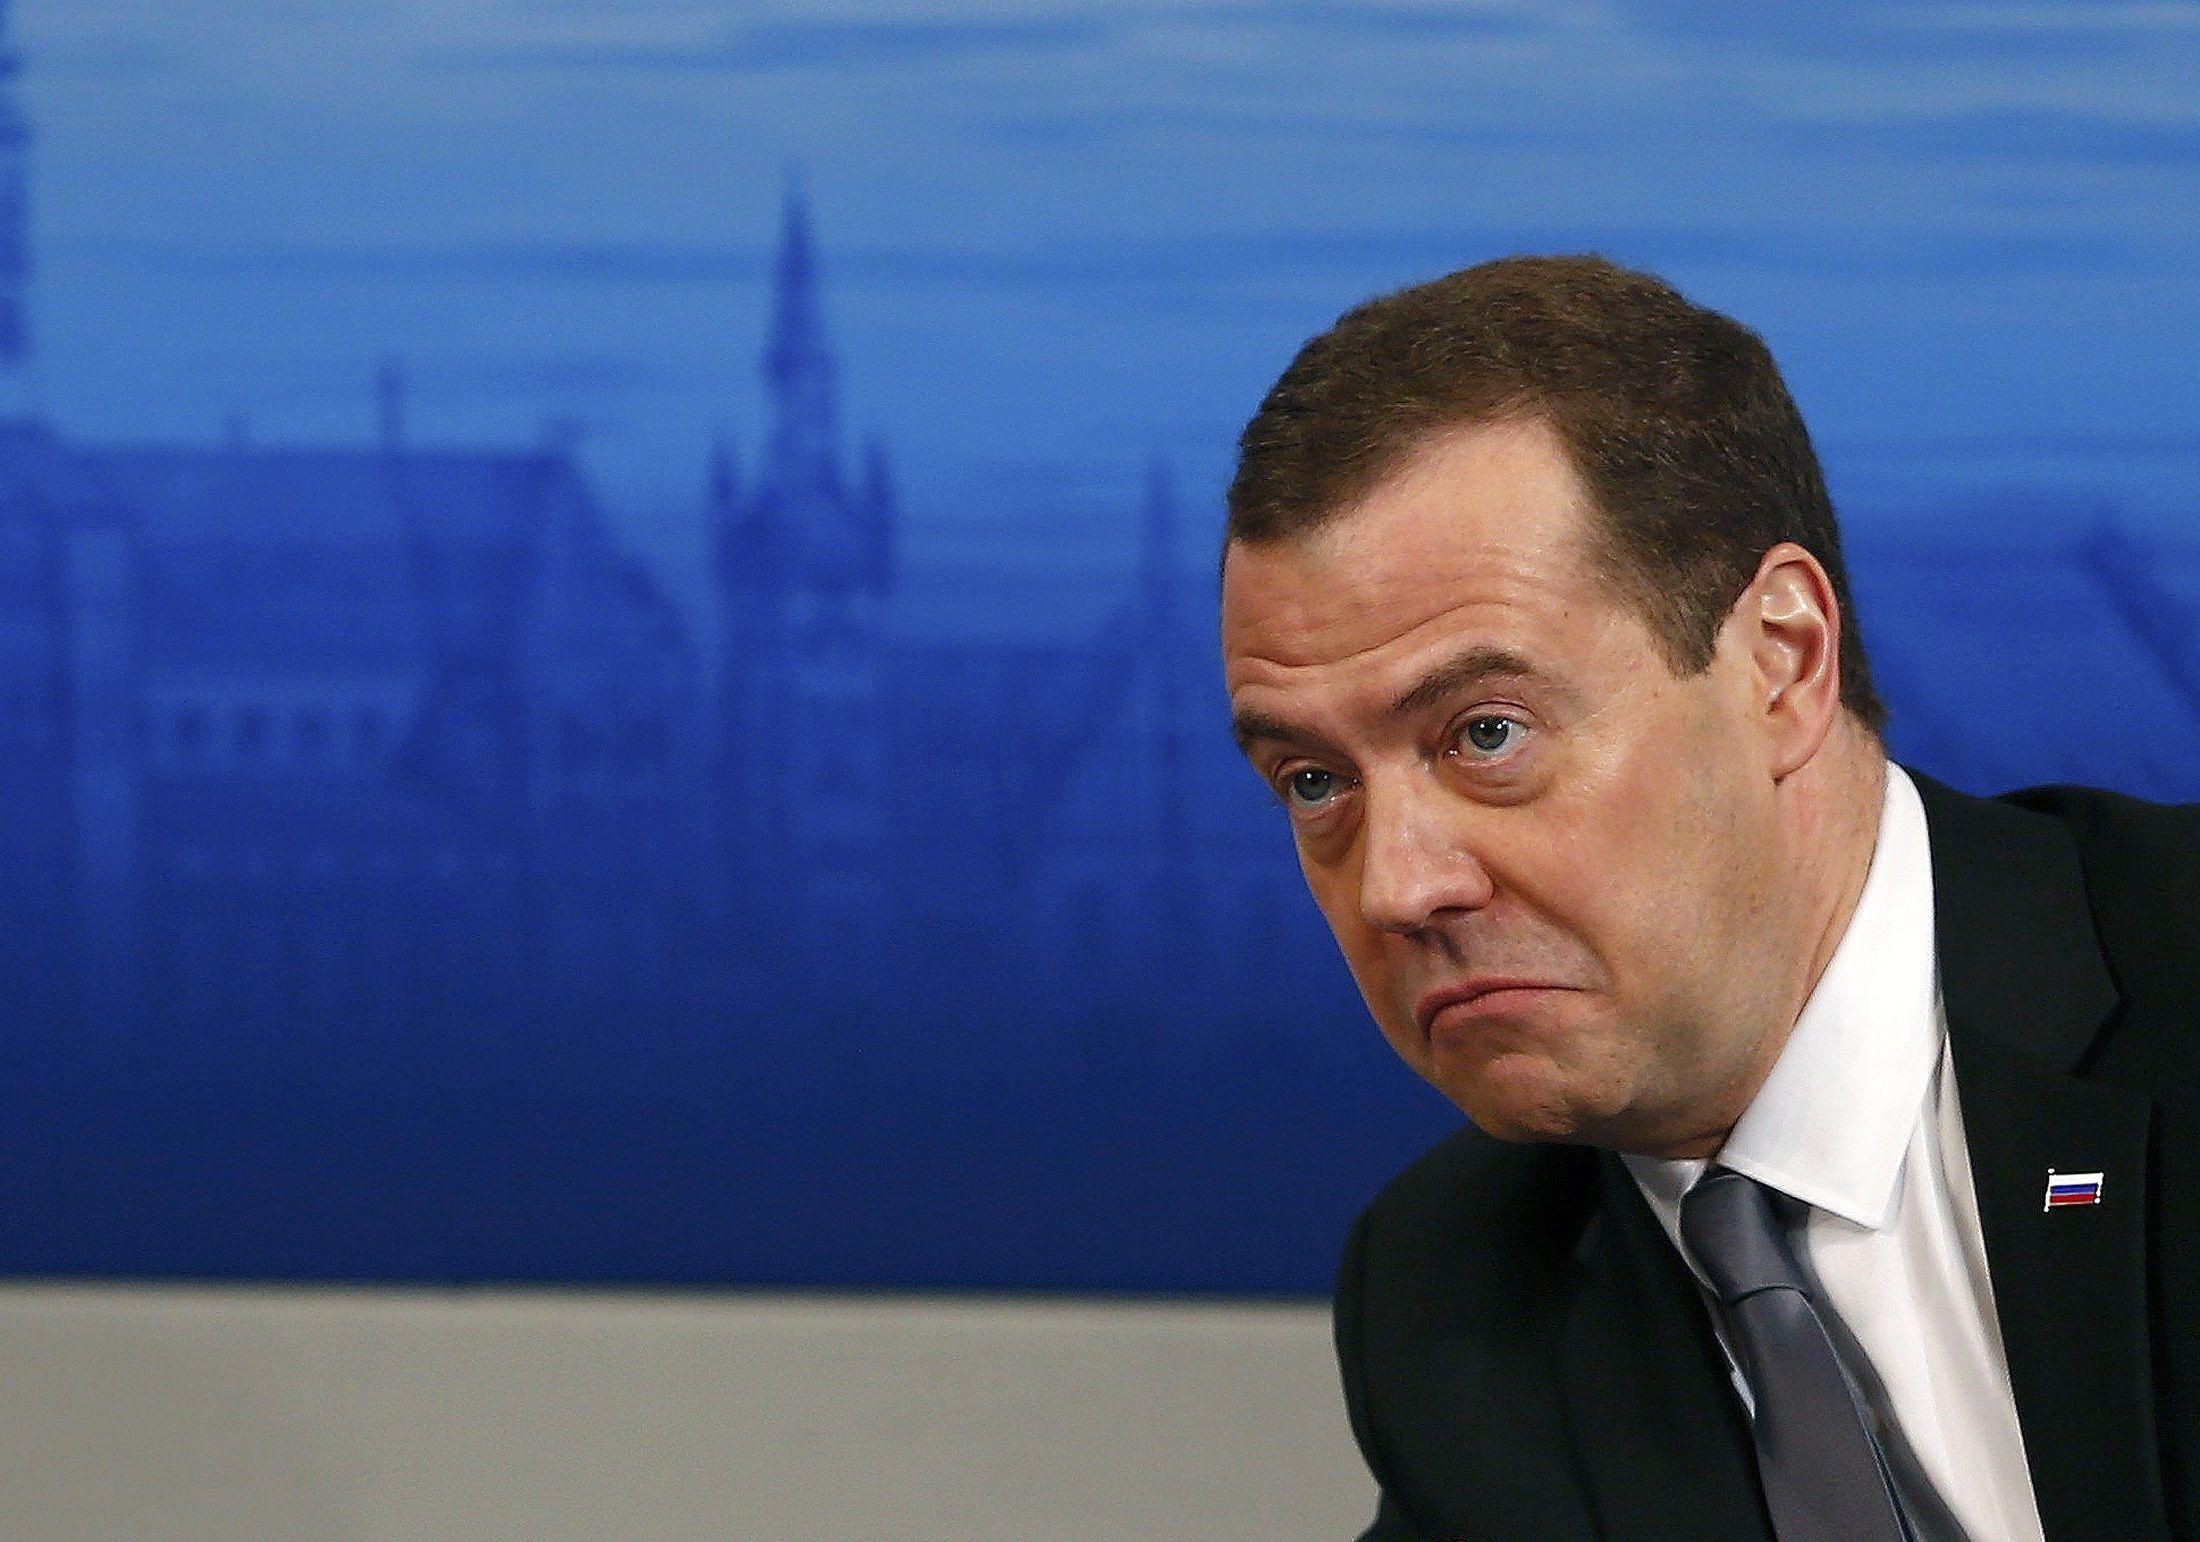 "Мы все равно будем идти своим путем": Медведев заявил, что Россия не боится никаких санкций